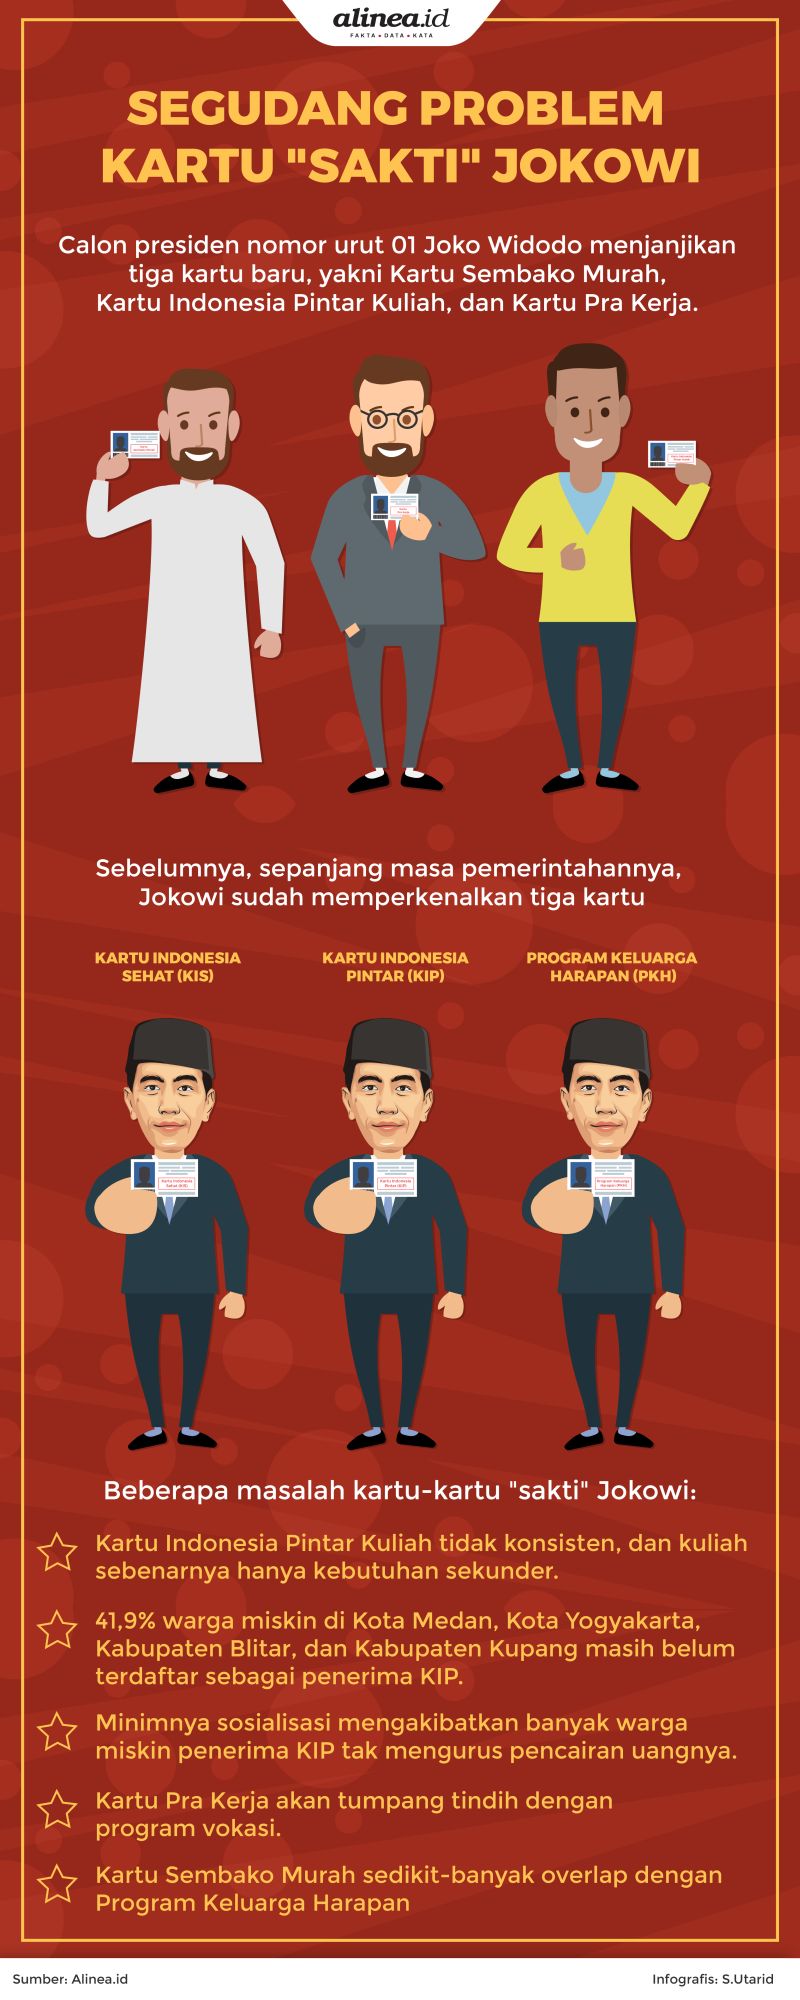 Tiga kartu baru tersebut, antara lain Kartu Sembako Murah, Kartu Indonesia Pintar Kuliah, dan Kartu Pra Kerja.